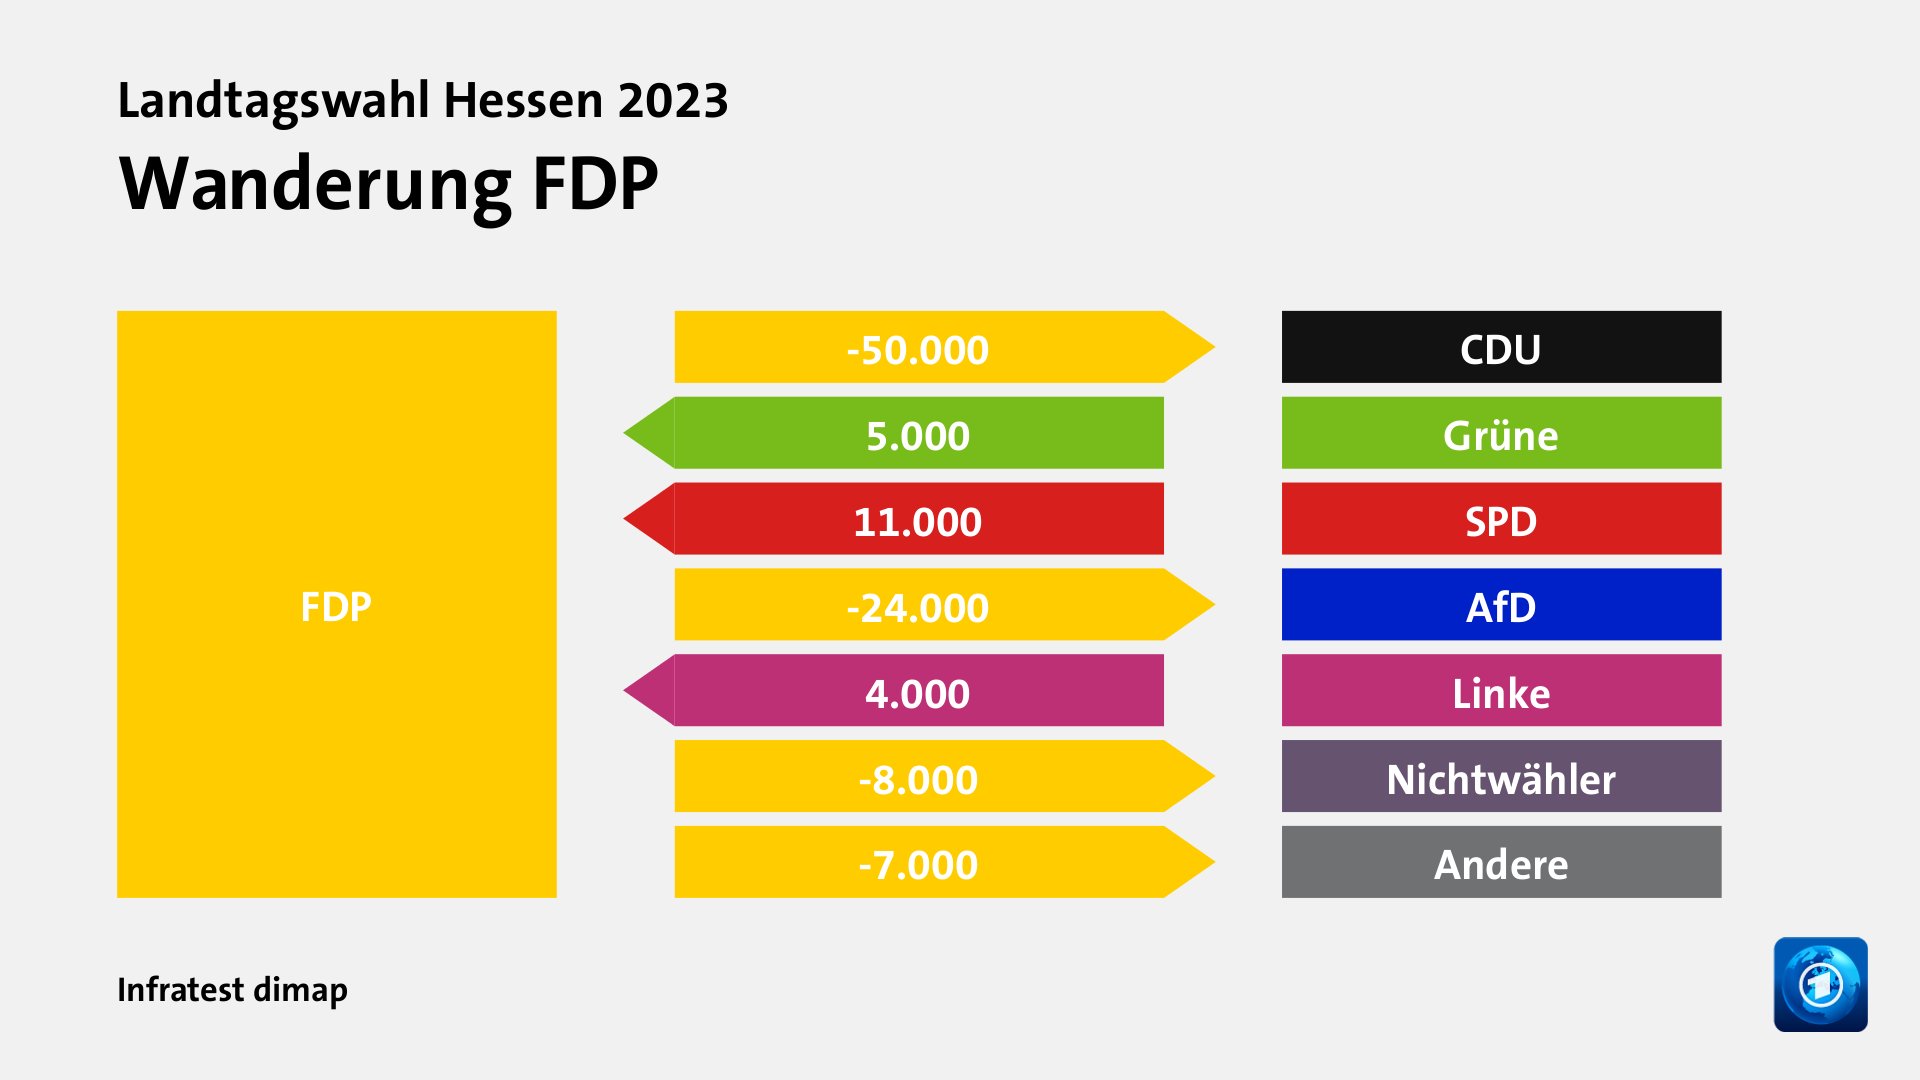 Wanderung FDPzu CDU 50.000 Wähler, von Grüne 5.000 Wähler, von SPD 11.000 Wähler, zu AfD 24.000 Wähler, von Linke 4.000 Wähler, zu Nichtwähler 8.000 Wähler, zu Andere 7.000 Wähler, Quelle: Infratest dimap